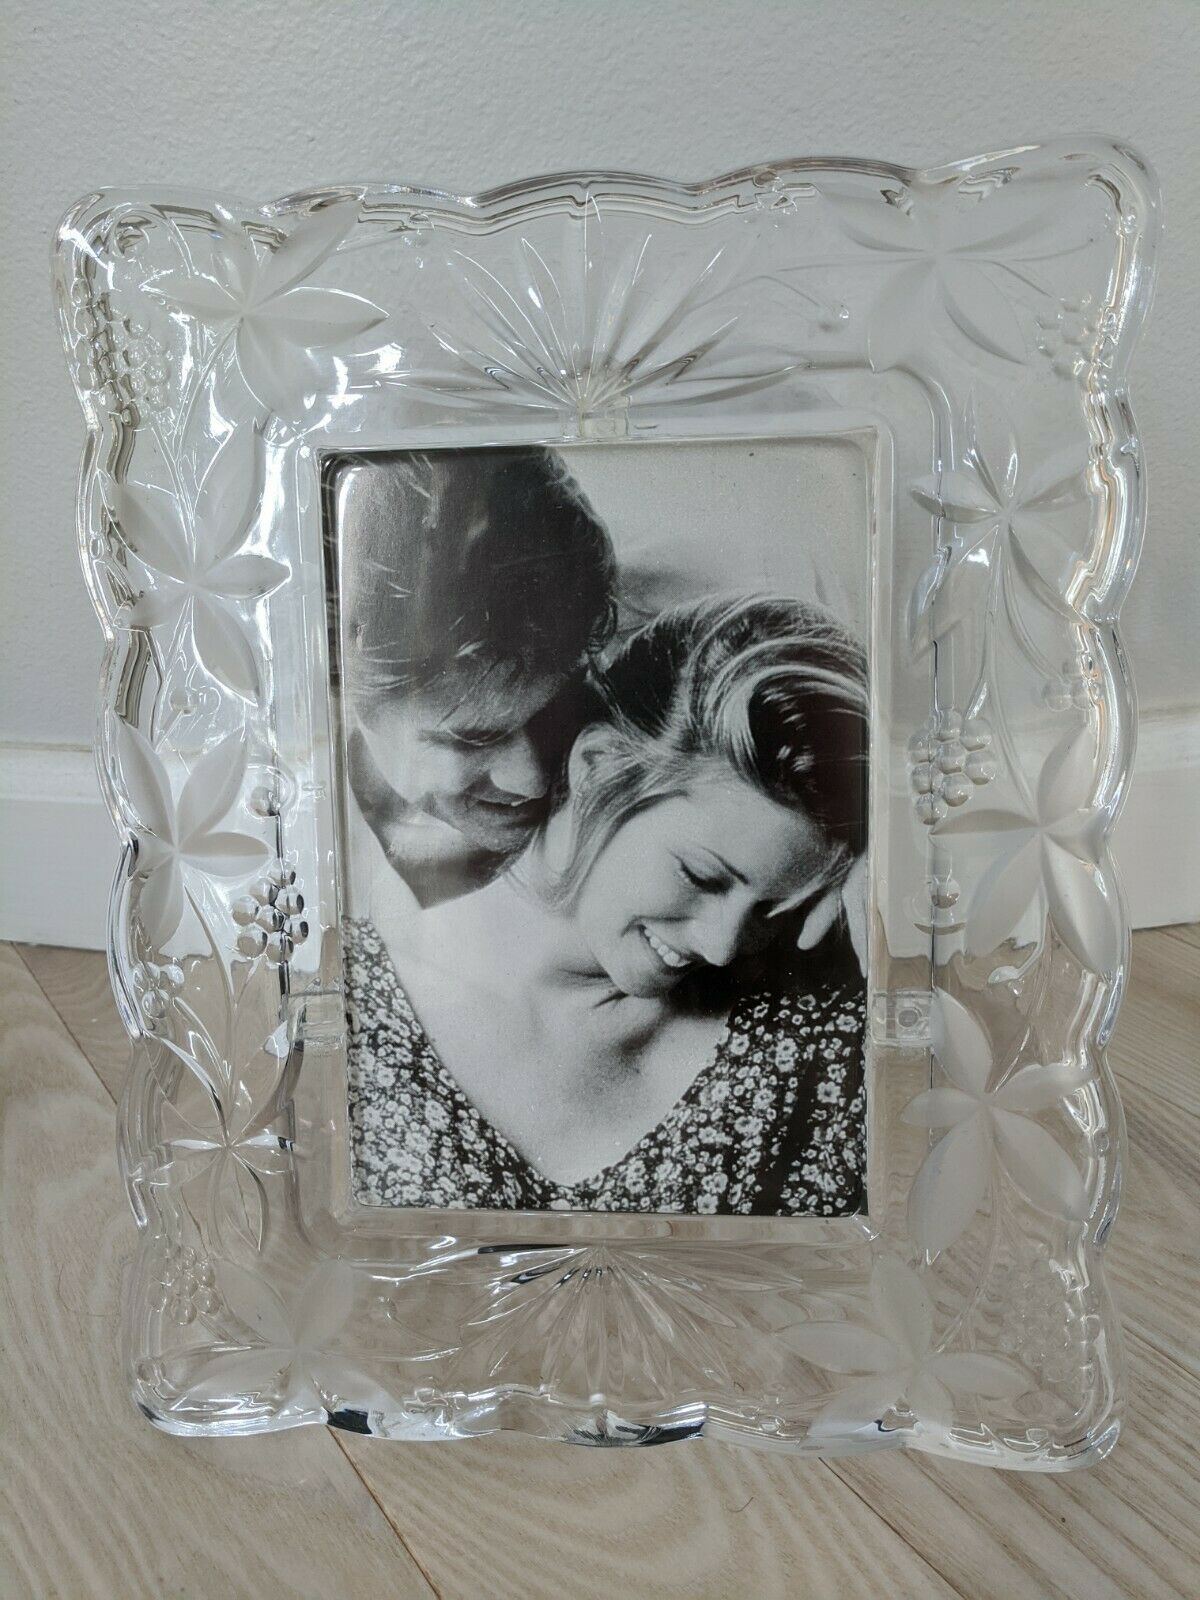 MIKASA Crystal Photo Frame - Garden Terrace Holds 5" x 7" - $62.90